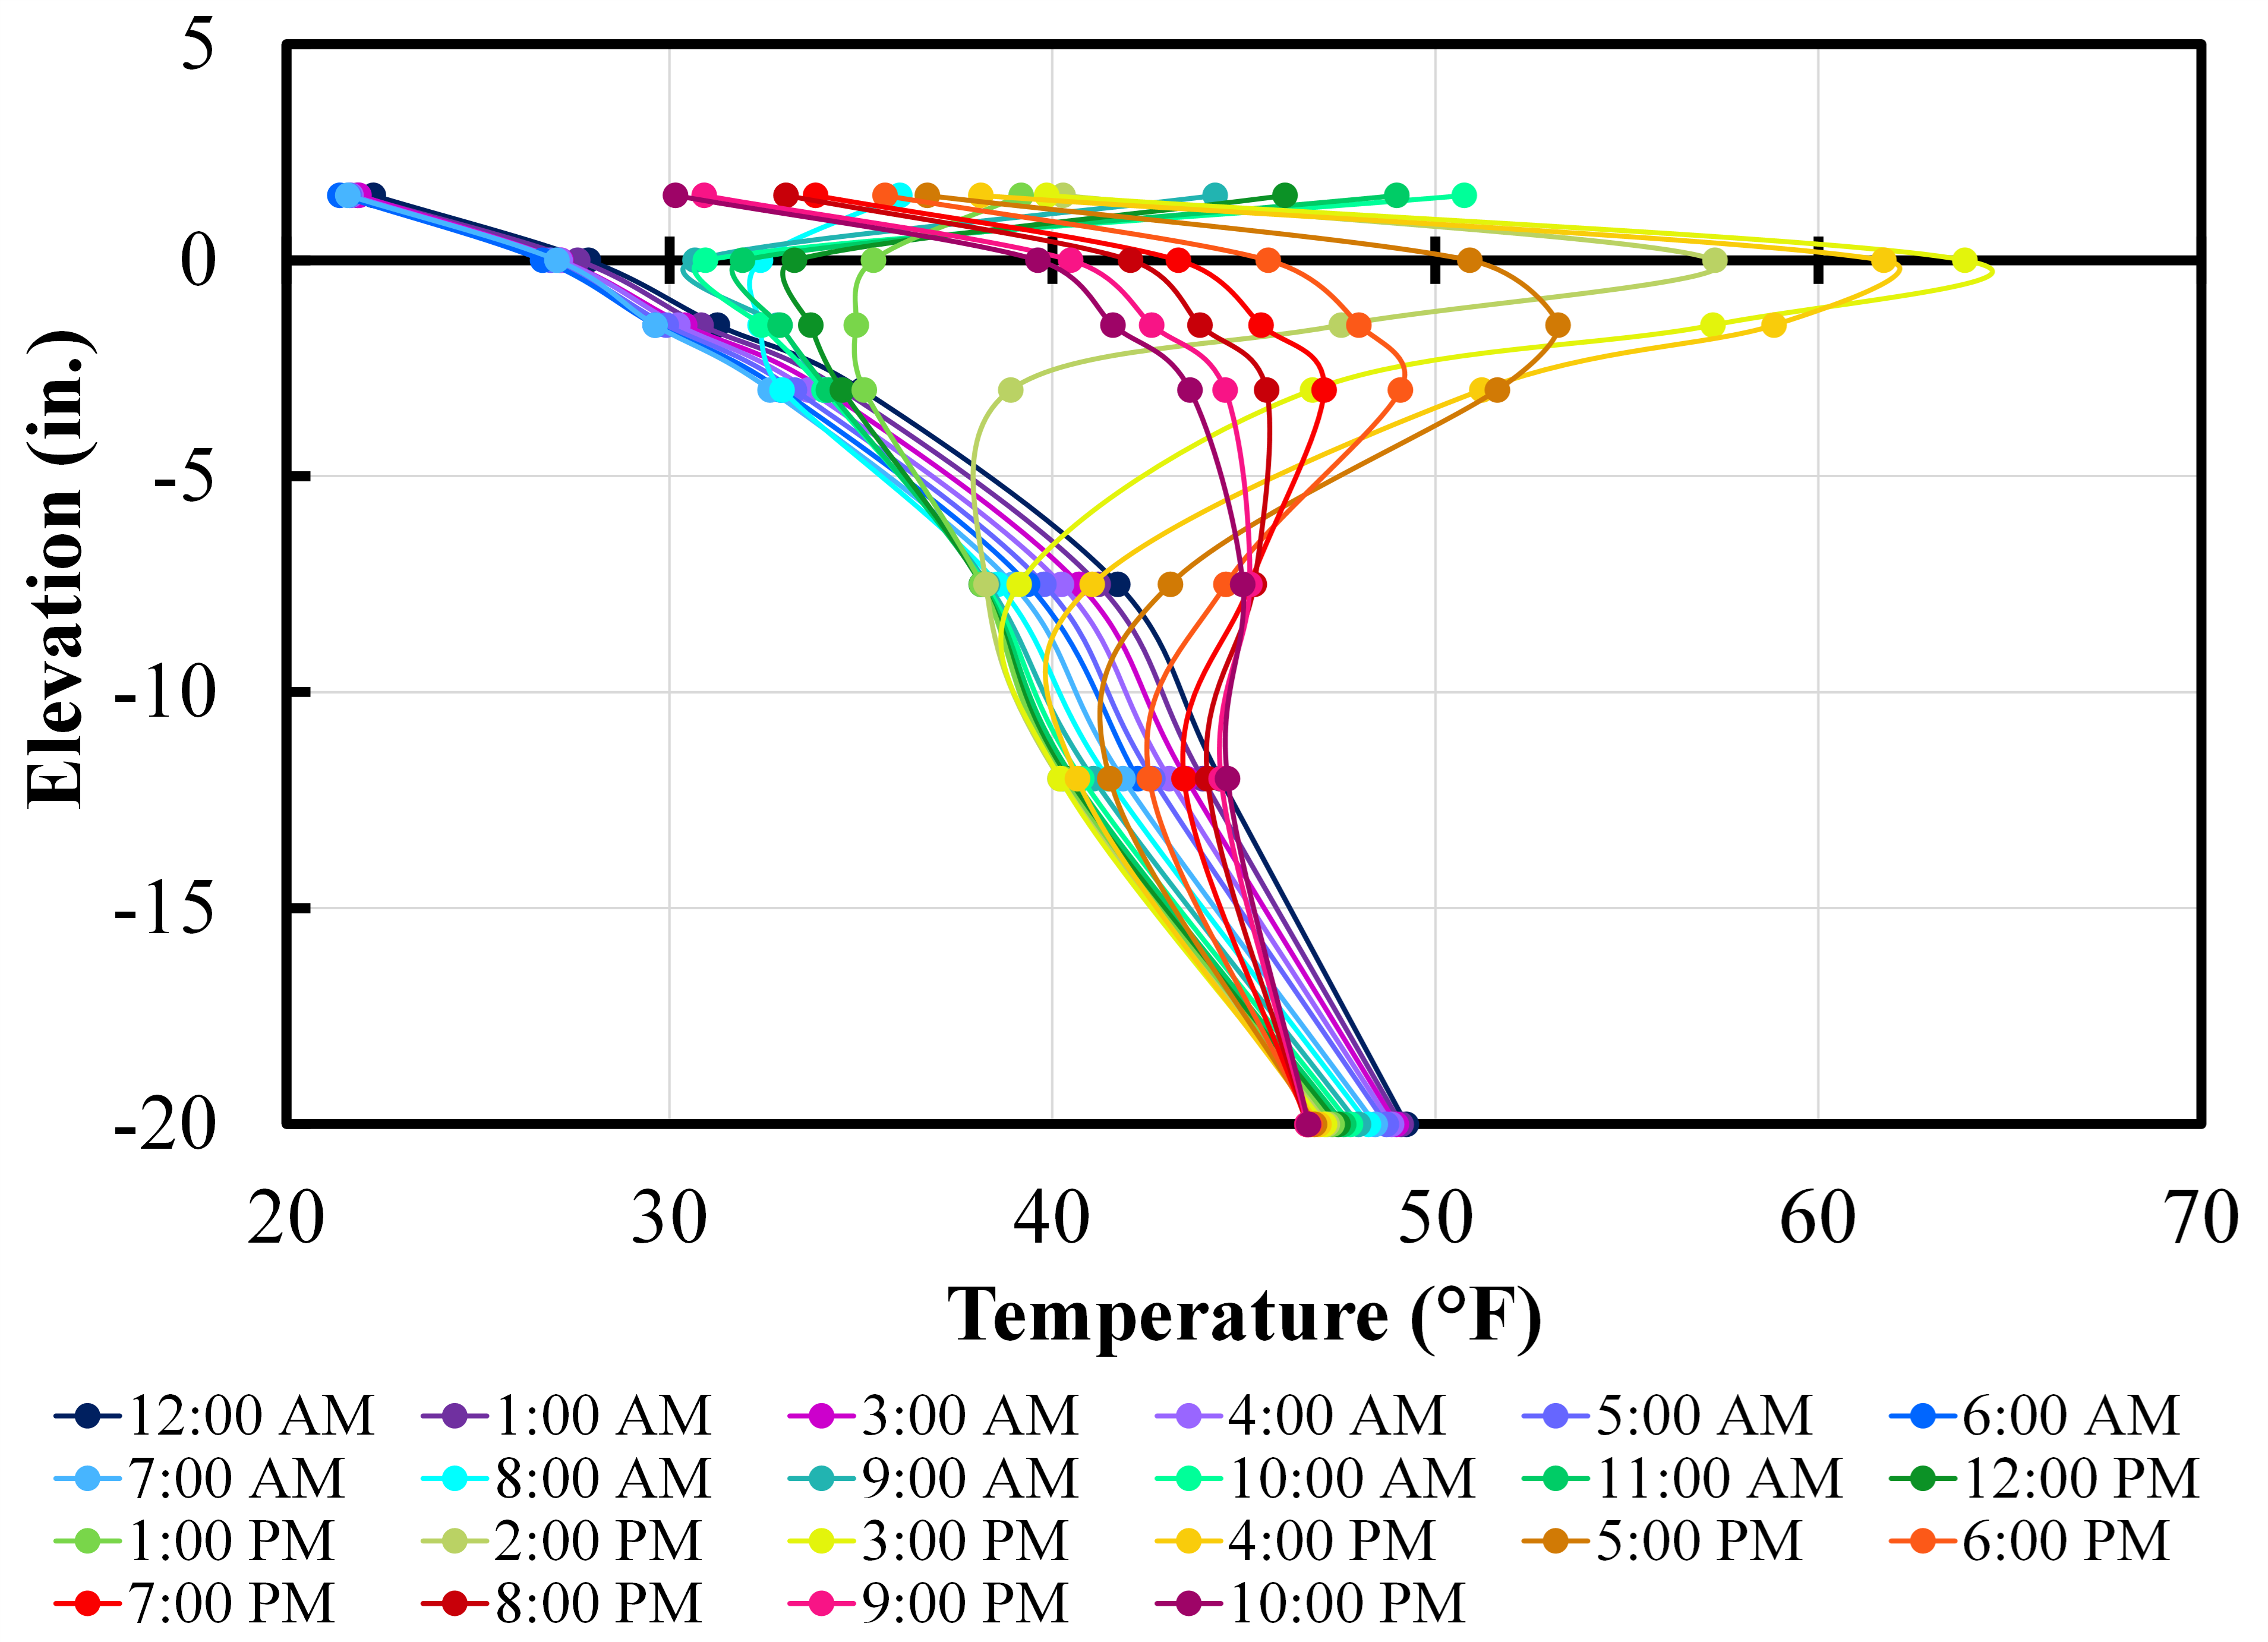 TemperatureDistributionGraph